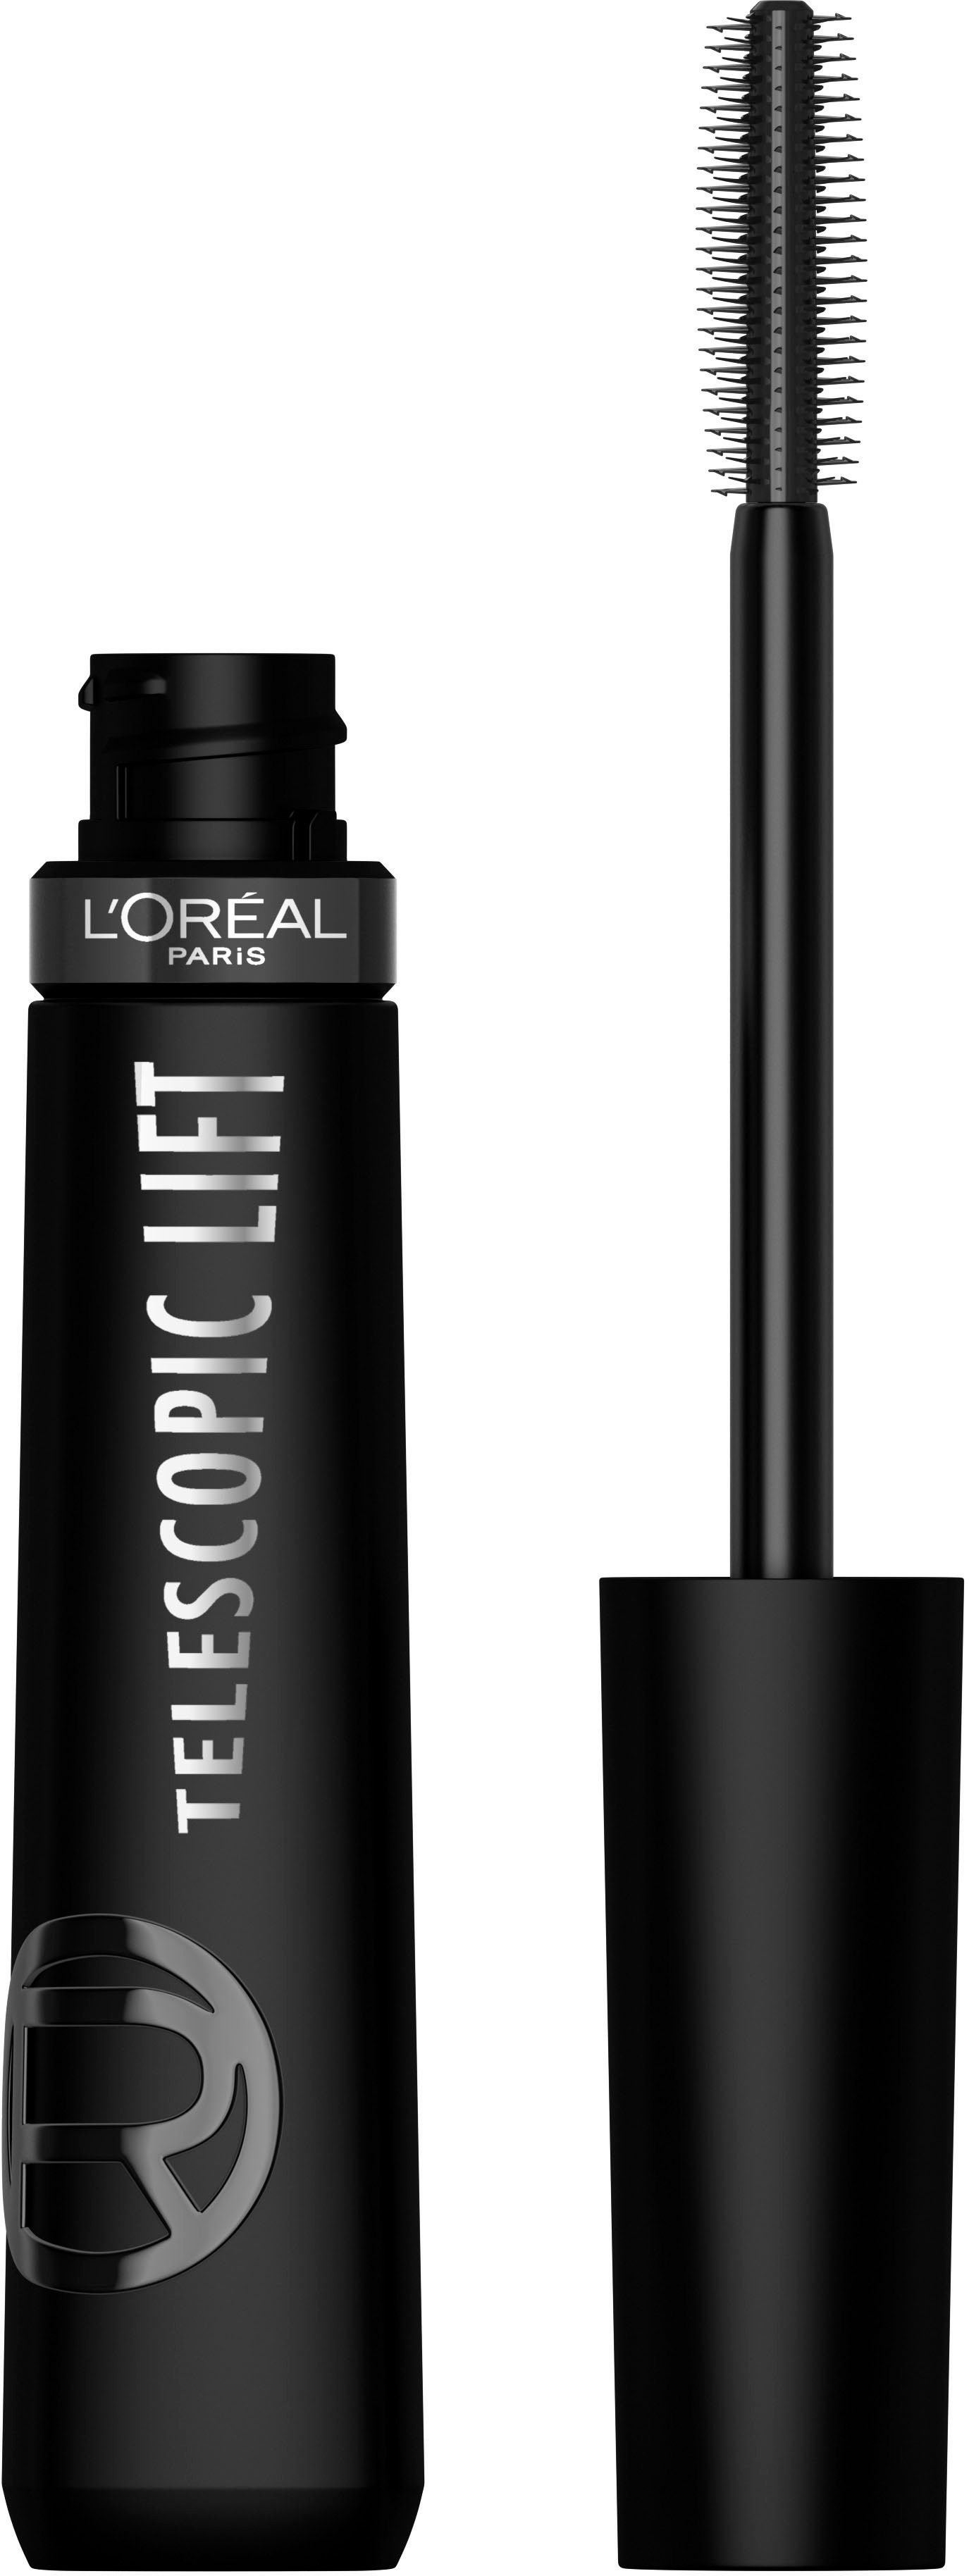 L'ORÉAL PARIS Mascara L'Oréal Lift Mascara, Lifting-Effekt Wimperntusche Telescopic Black Paris Extra mit